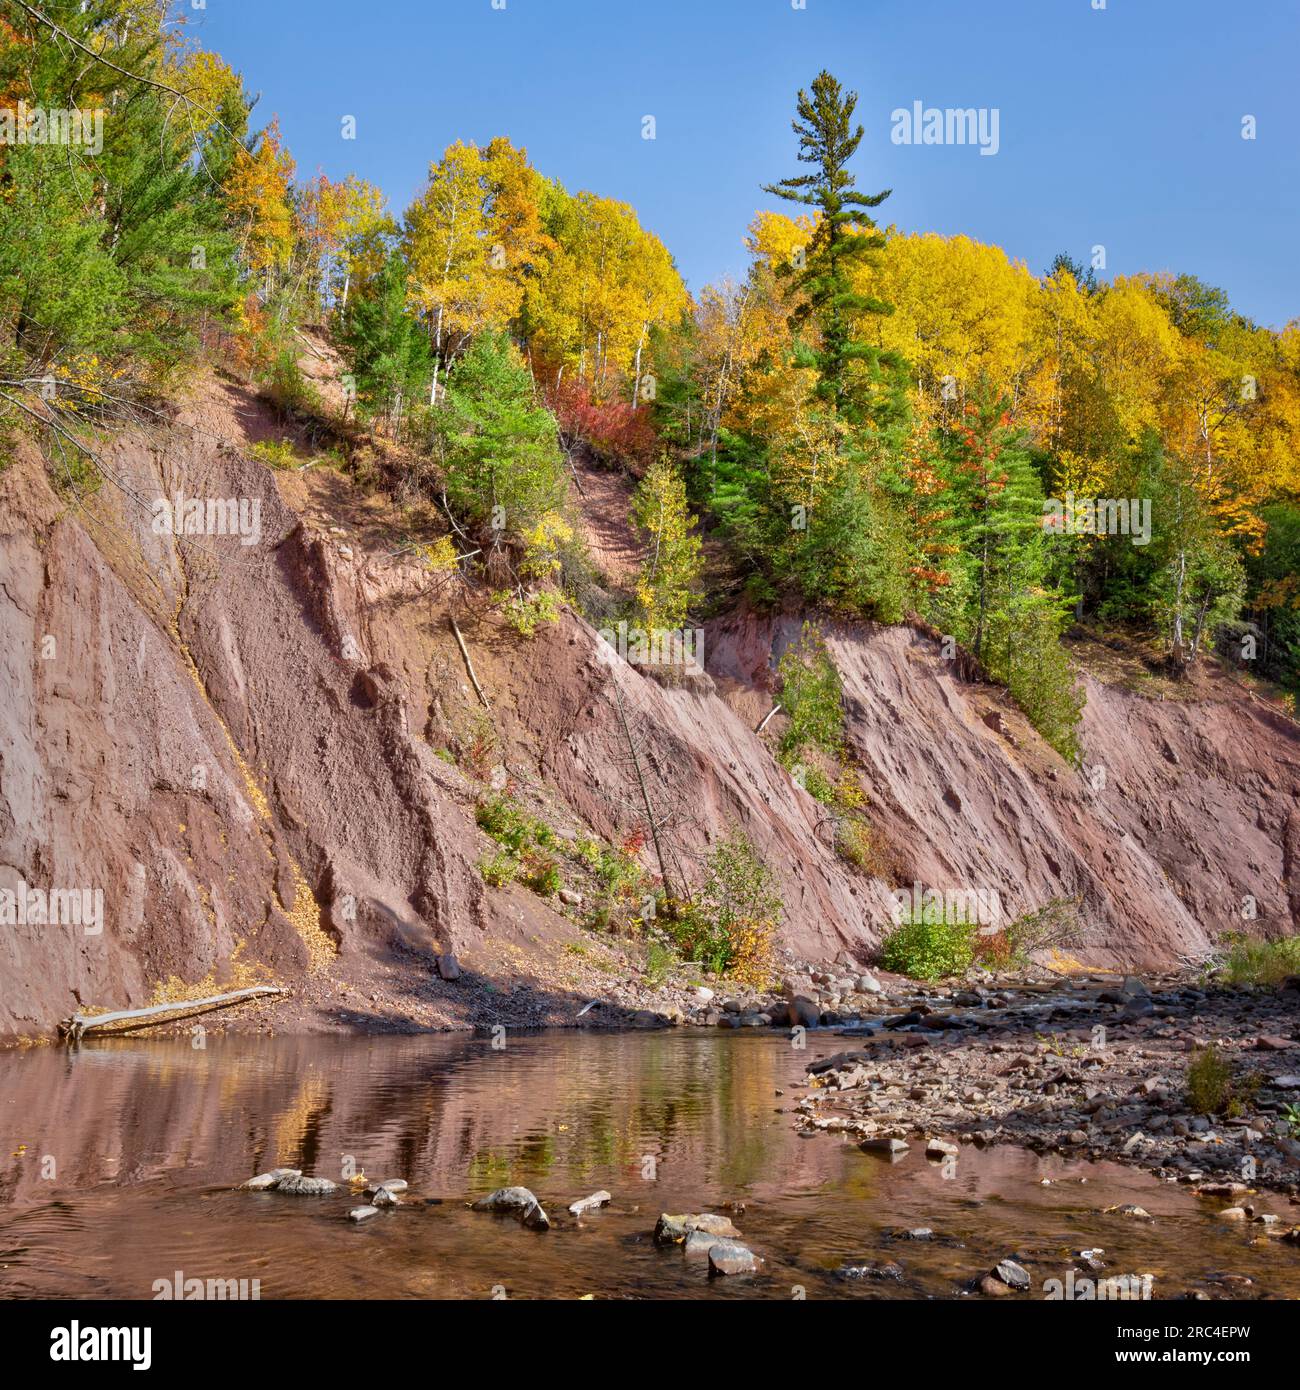 Potato River Falls, une belle chute près de Gurney Wisconsin, tombe à 90 mètres dans la rivière Potato. Parc de ville avec campings rustiques disponibles. Banque D'Images